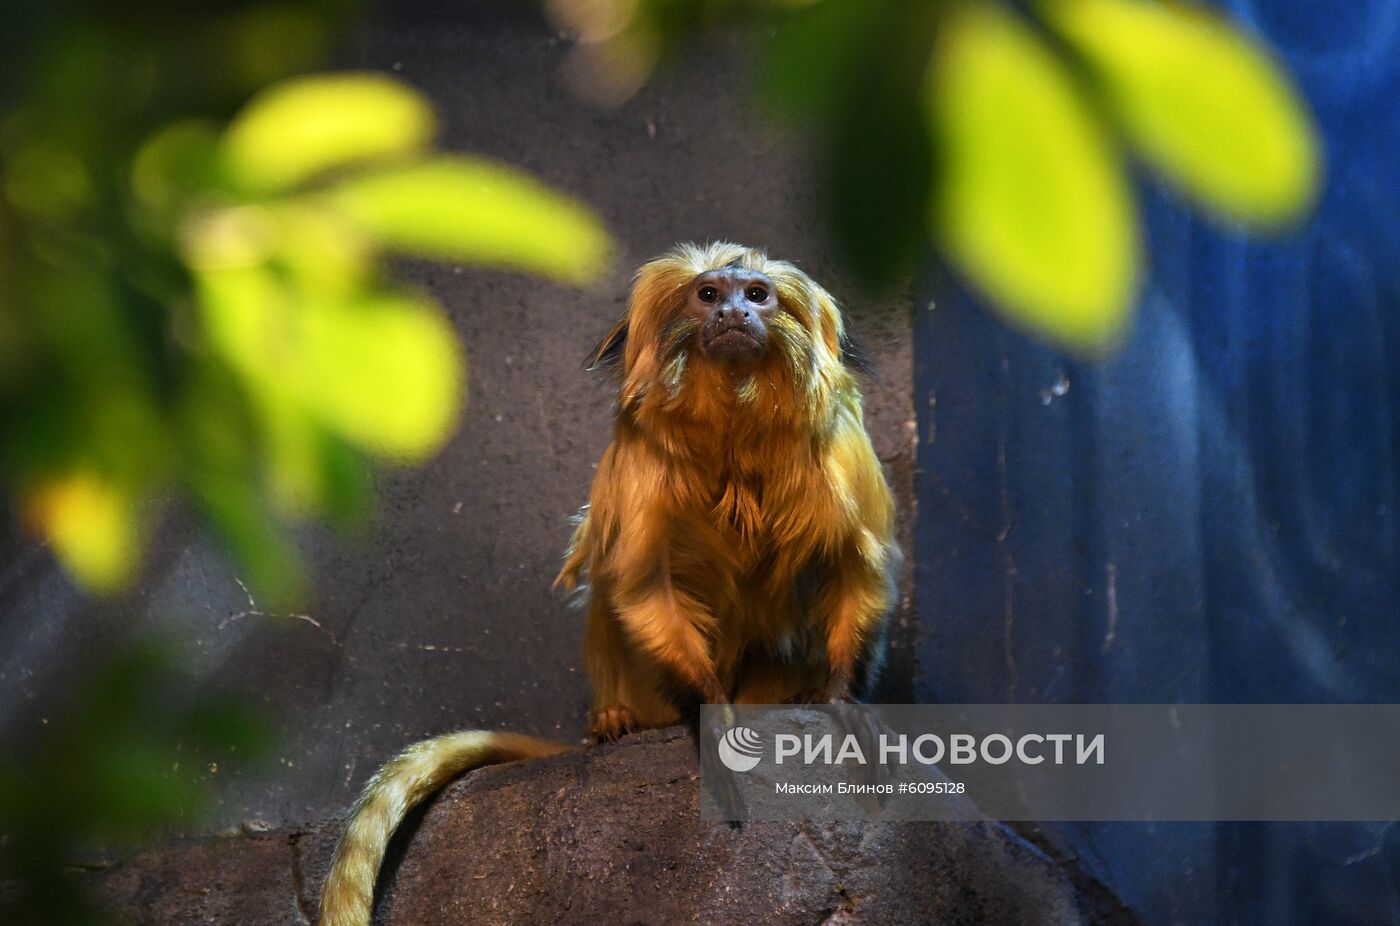 Редкие тамарины появились в Московском зоопарке